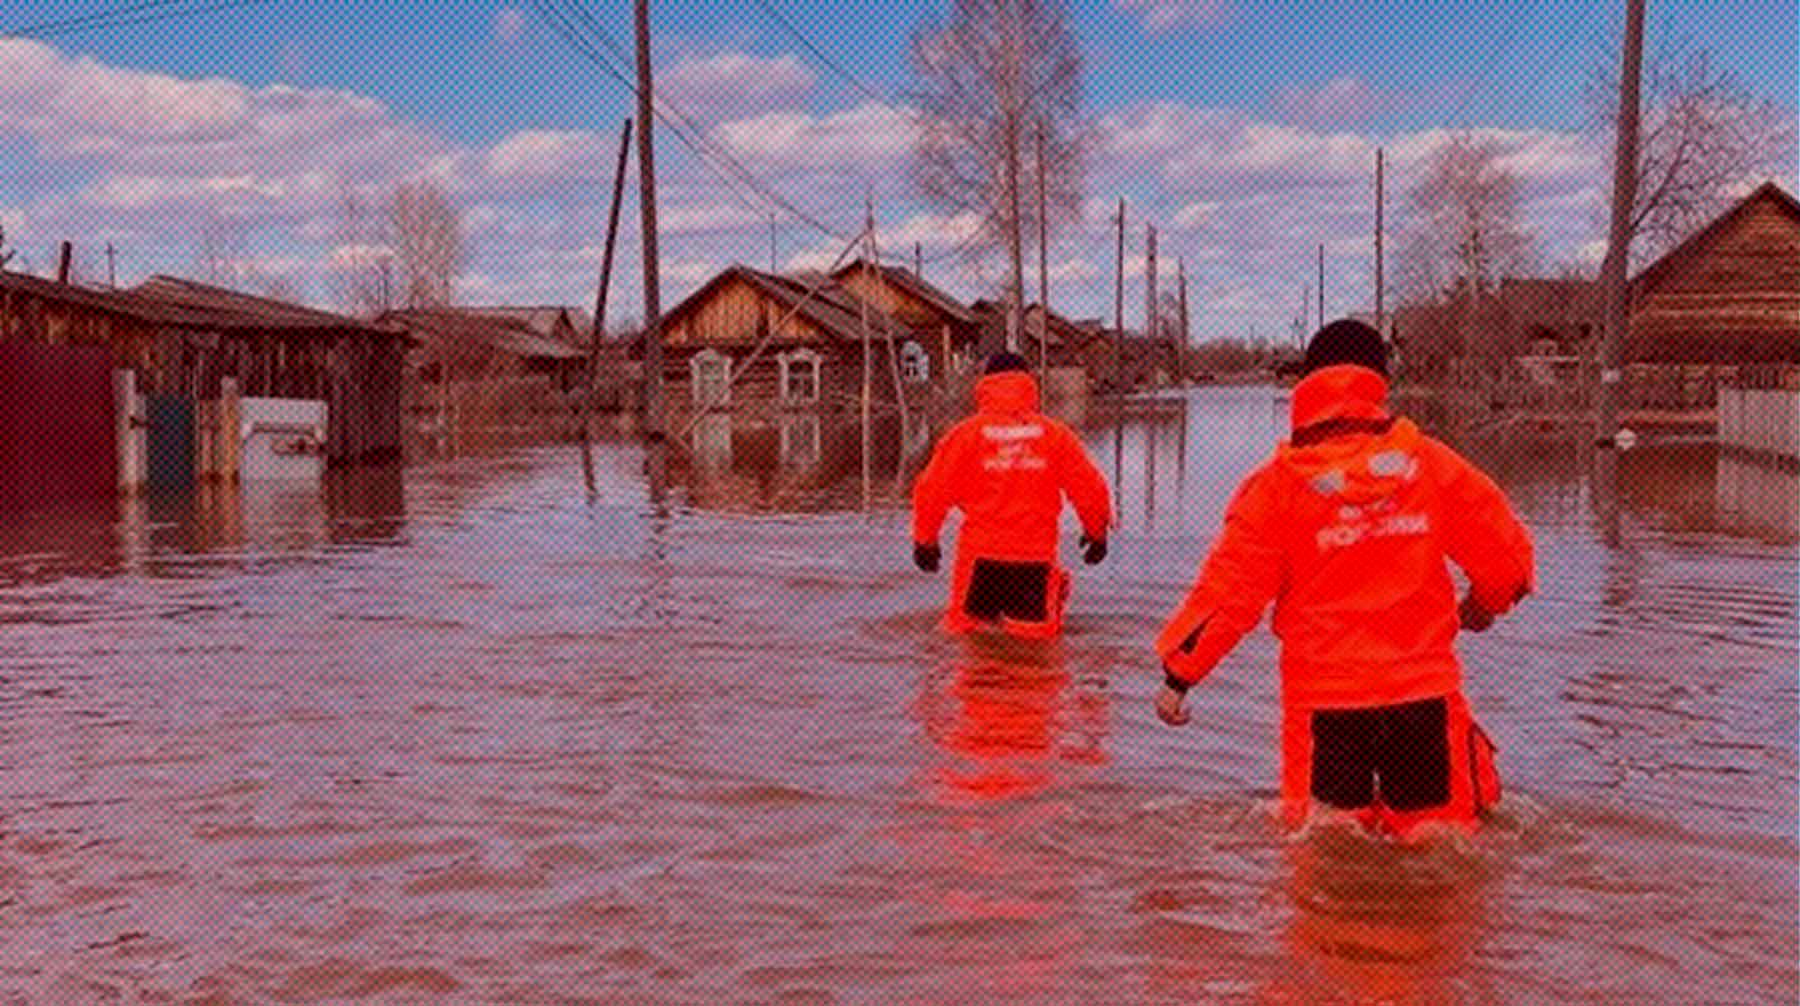 Беспокойство у администрации региона вызывают жители, отказавшиеся эвакуироваться из затопленной зоны Фото: РИА Новости / МЧС РФ